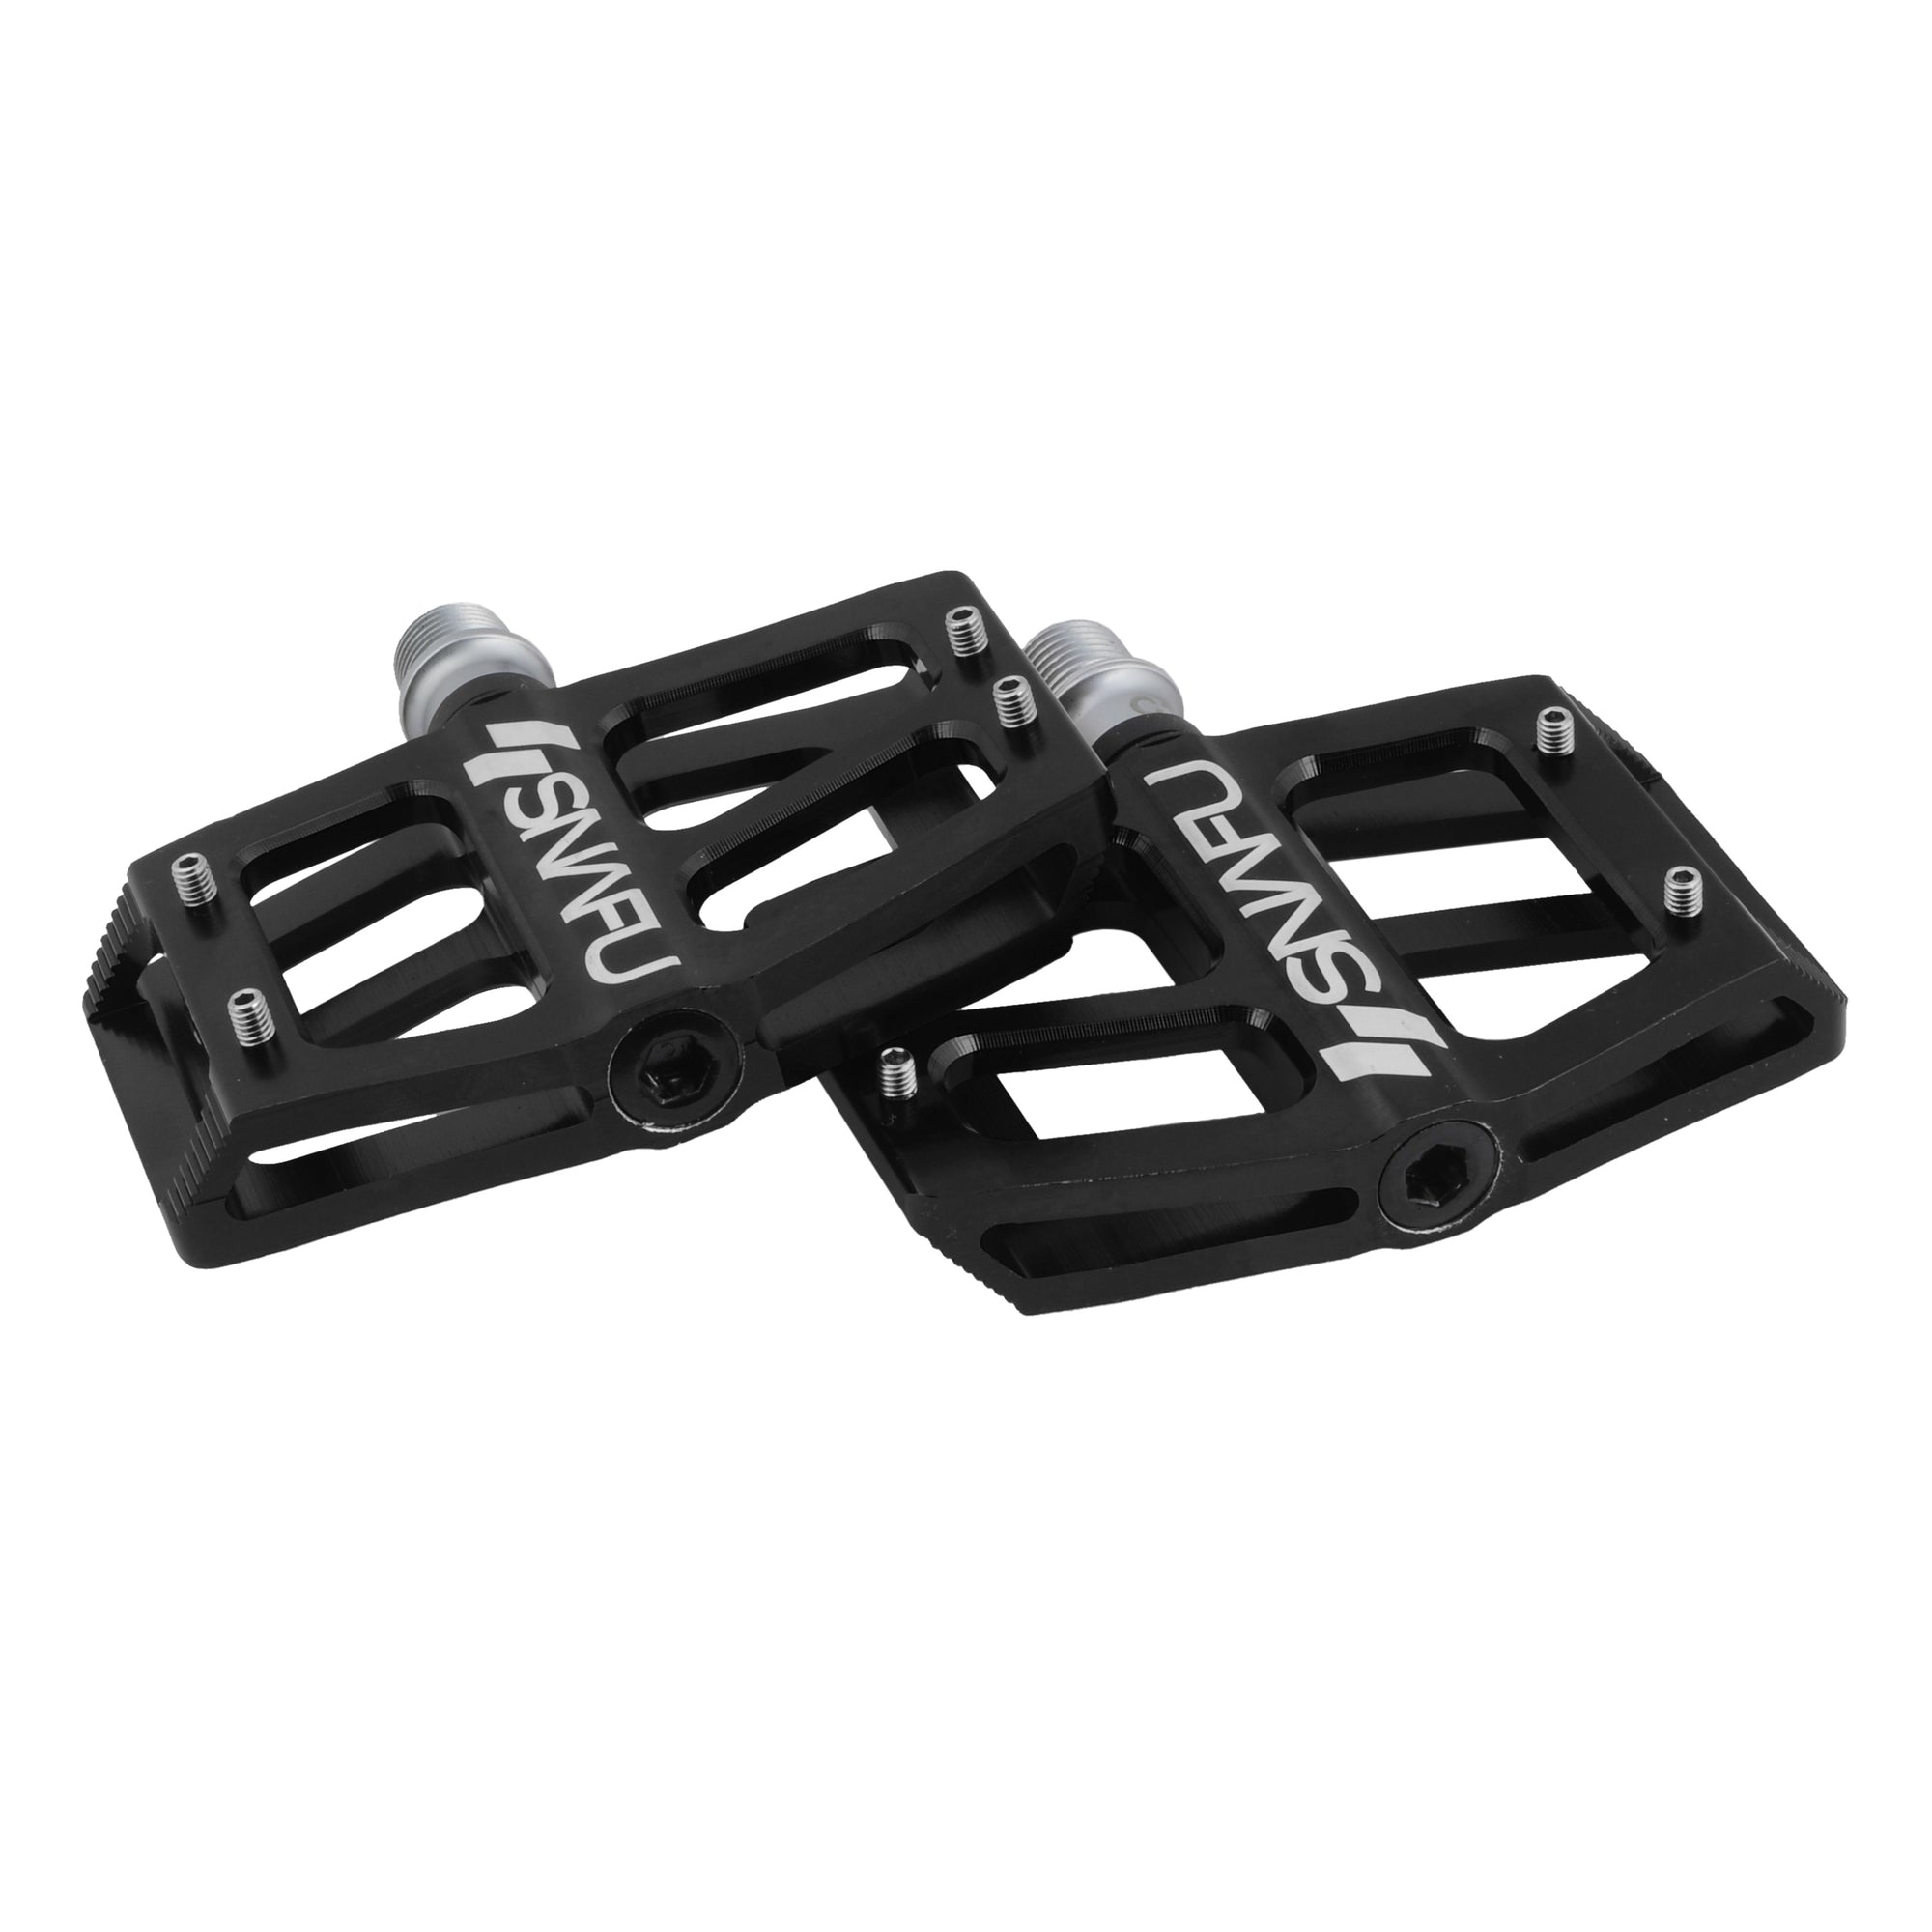 Snafu BMX Cactus Jr Aluminum Platform Pedals - Sealed - 9/16 - Black